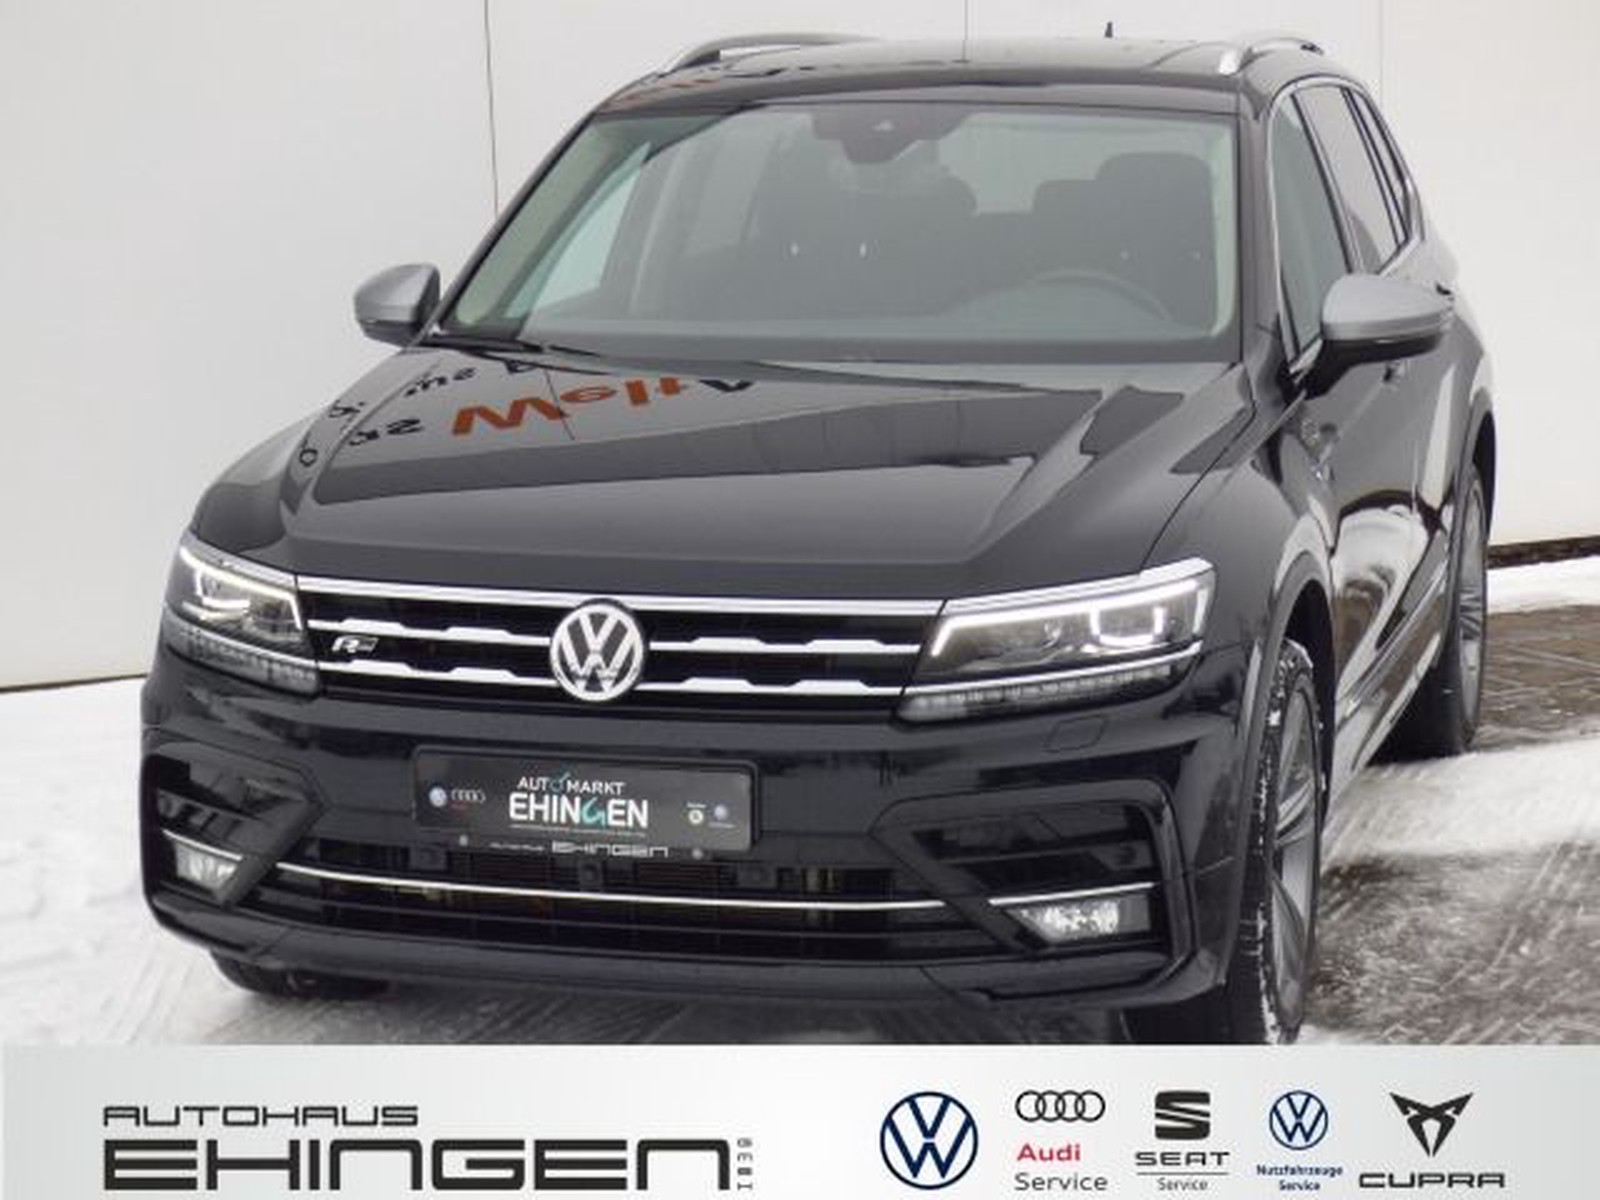 Volkswagen Tiguan Allspace Highline R Line Panorama AHK gebraucht kaufen in  Ehingen Preis 37777 eur - Int.Nr.: 05169 VERKAUFT